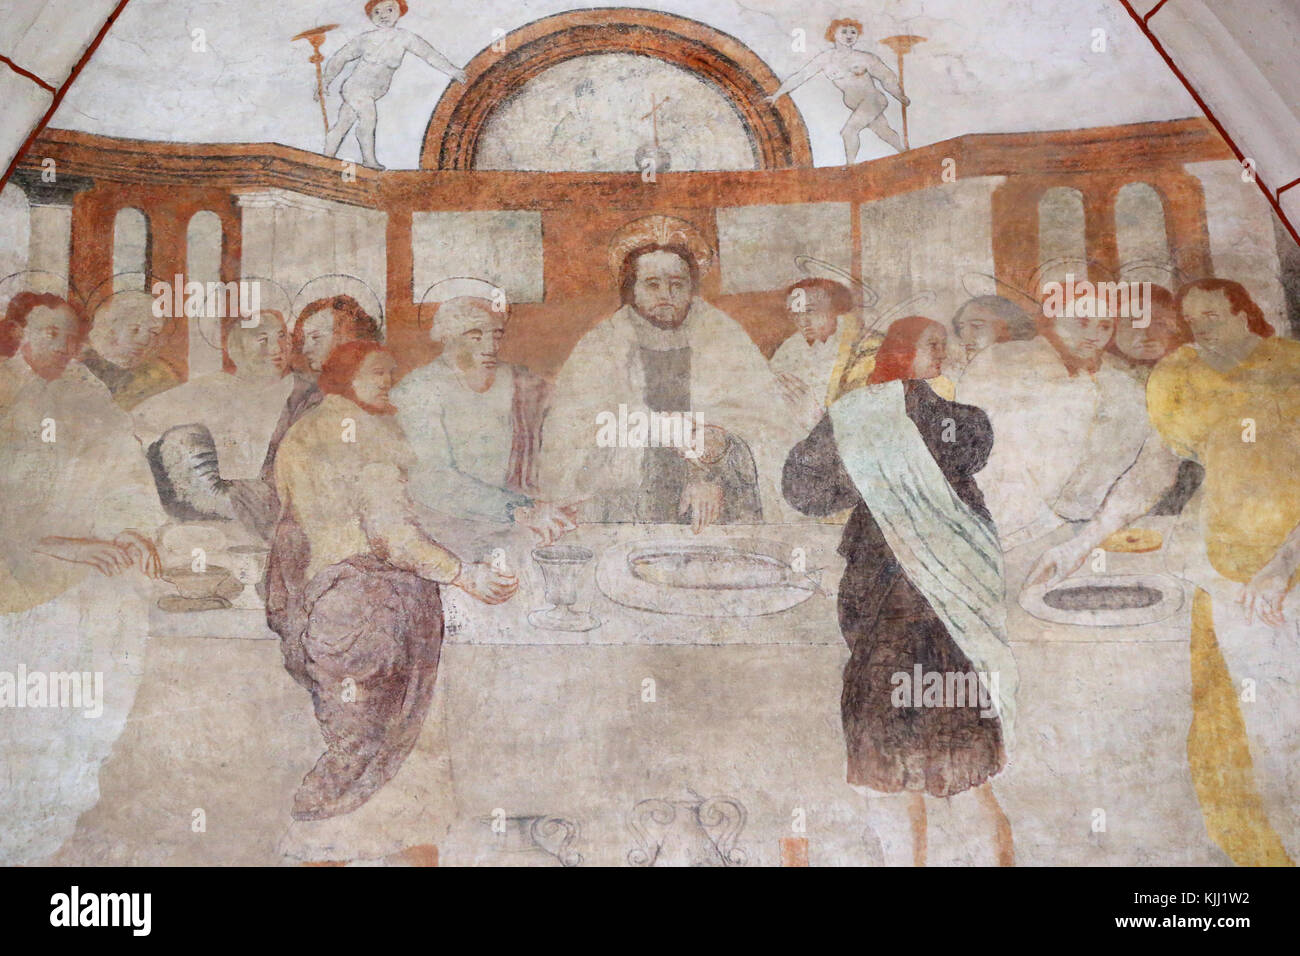 Vault de Lugny église. La peinture murale du 16e siècle. Le Christ dans sa passion. le dernier repas partagé par Jésus et ses disciples. La France. Banque D'Images